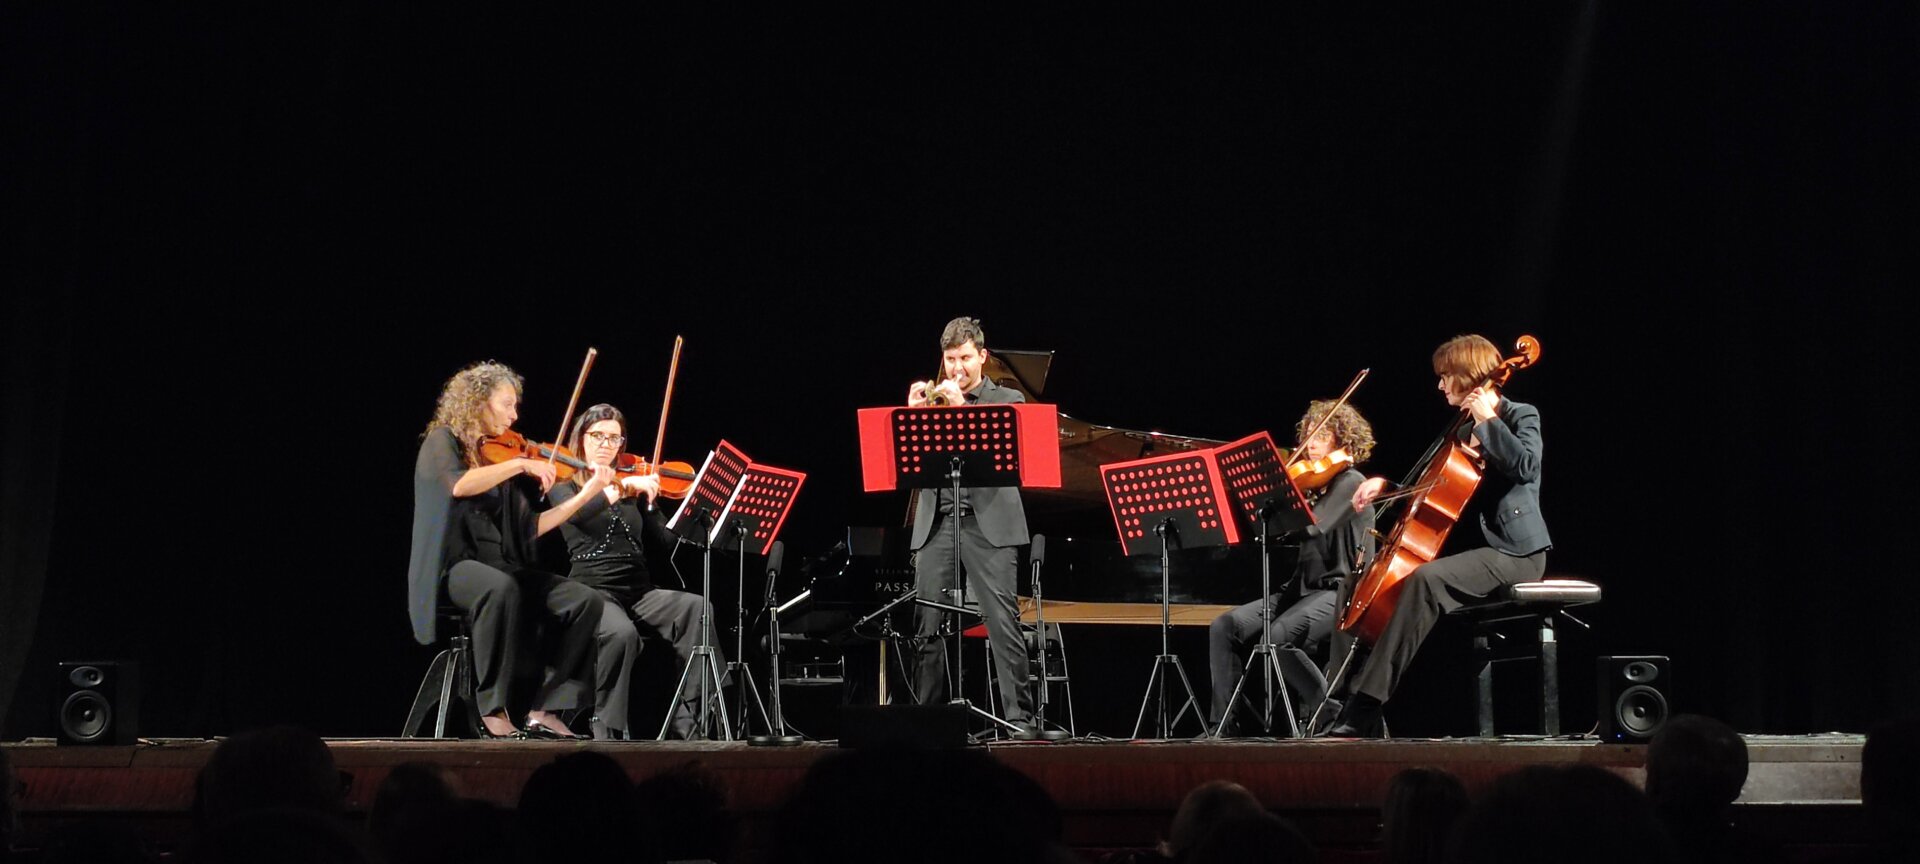 il quartetto d'archi e tromba con Marcello Ronchi (tromba), Rita Pepicelli (violino), Chiara Ballabio (violino), Giulia Fabris (viola), Marlise Goidanich (violoncello)